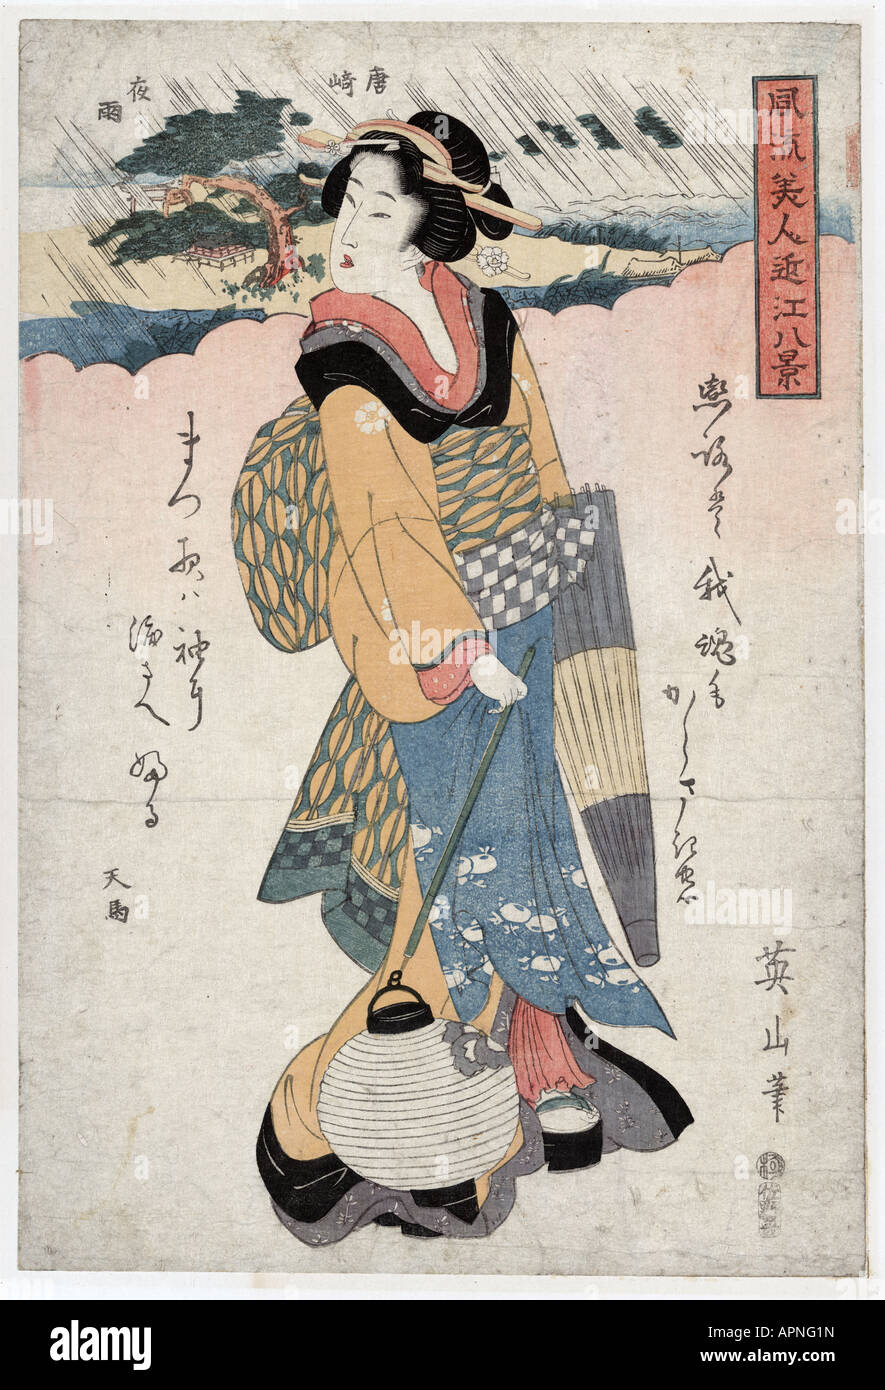 Karasaki no yau, Japan between 1810 and 1818 Stock Photo